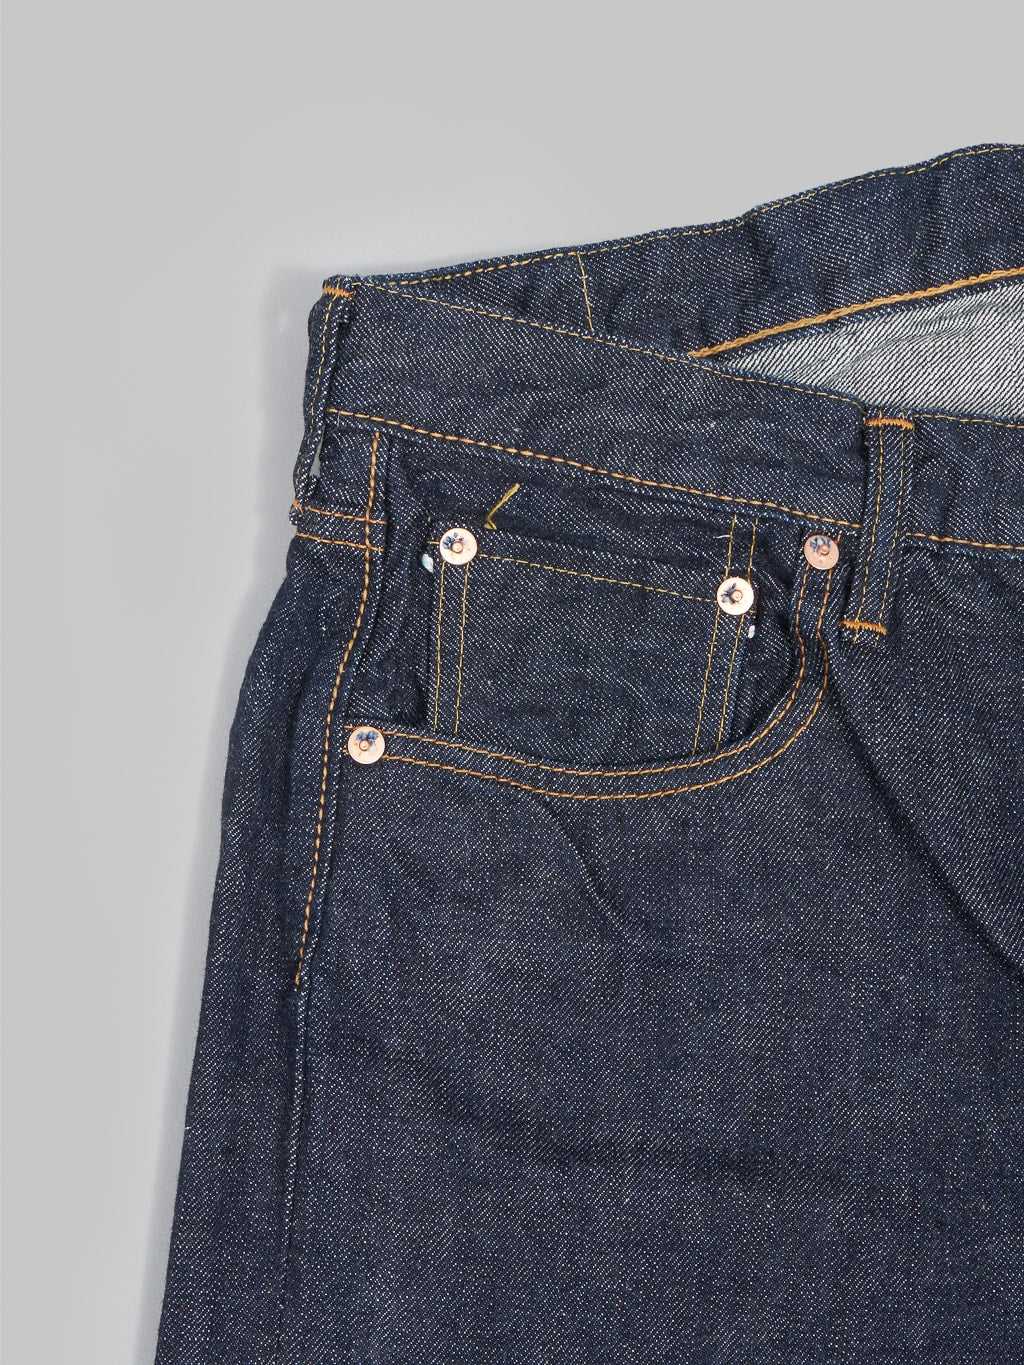 fullcount 1103 clean straight selvedge denim jeans coin pocket